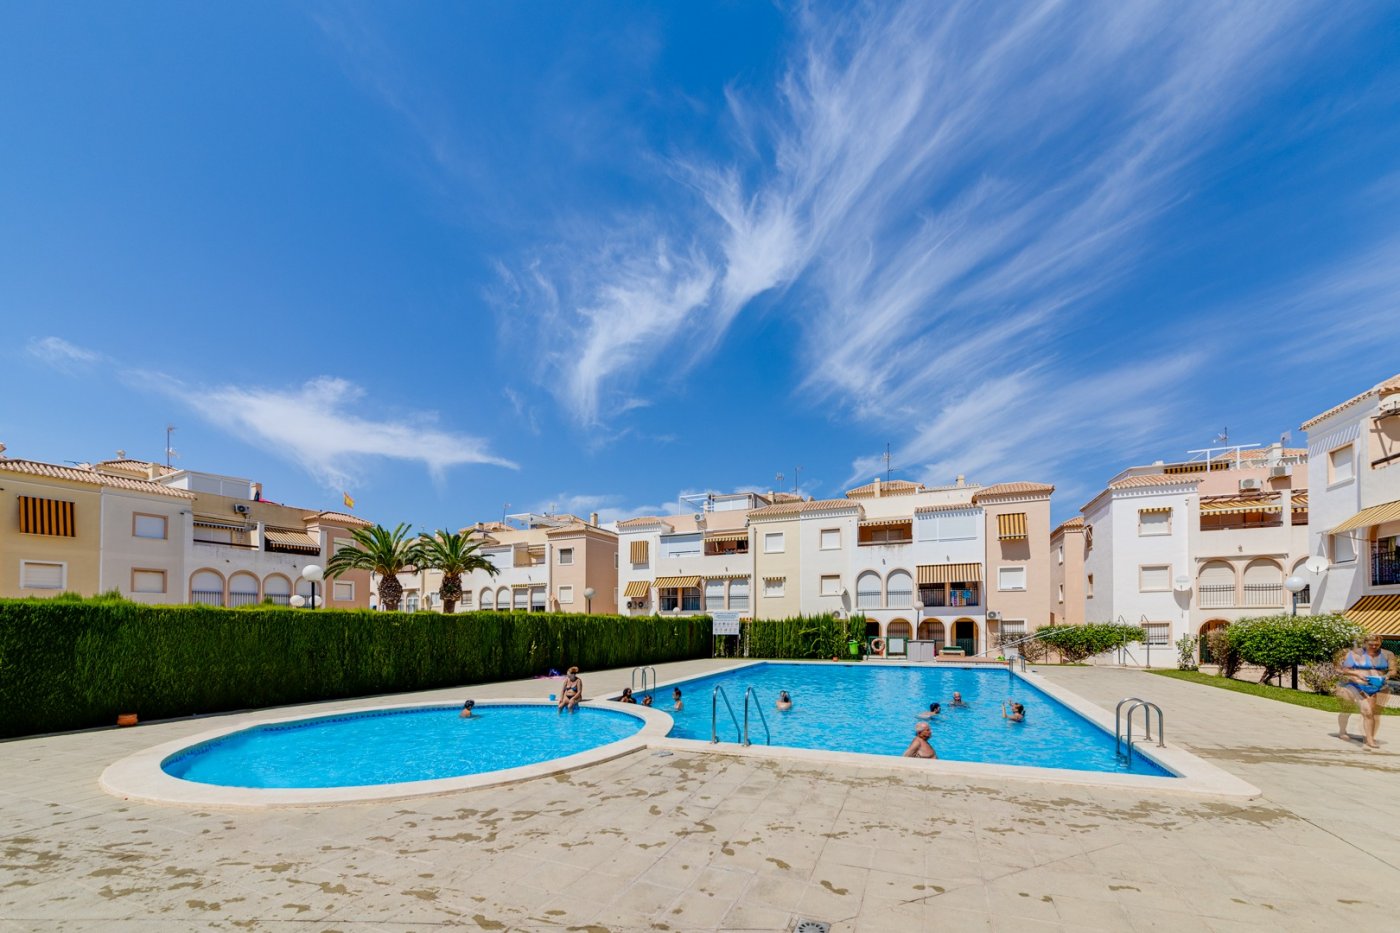 VERKOCHT! Appartement te koop in Residencial El Paraíso met zwembad bij het strand in Torrevieja.